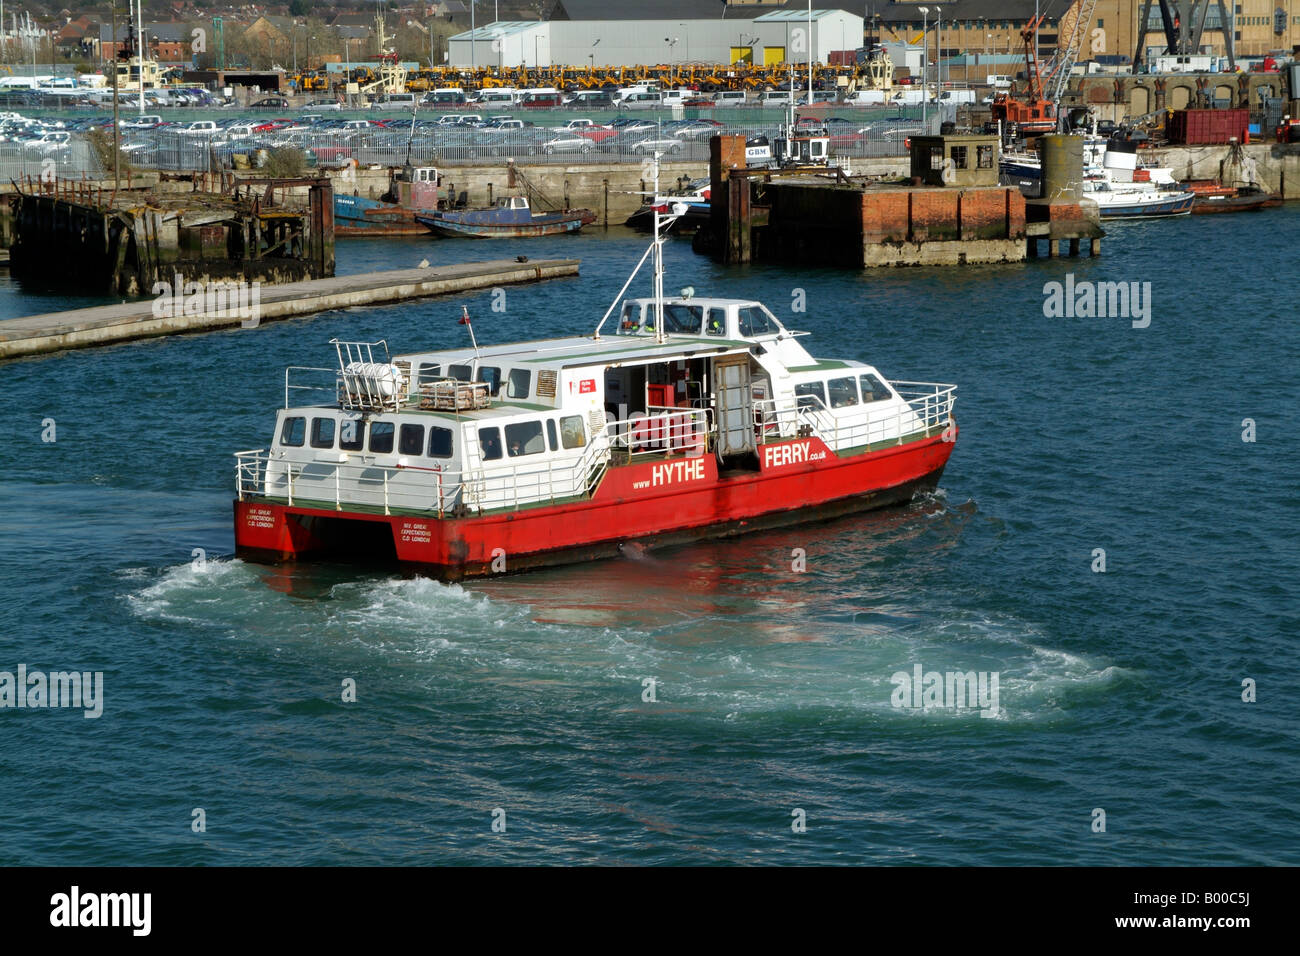 Ferry de Hythe de grandes attentes en cours Port de Southampton en Angleterre Banque D'Images